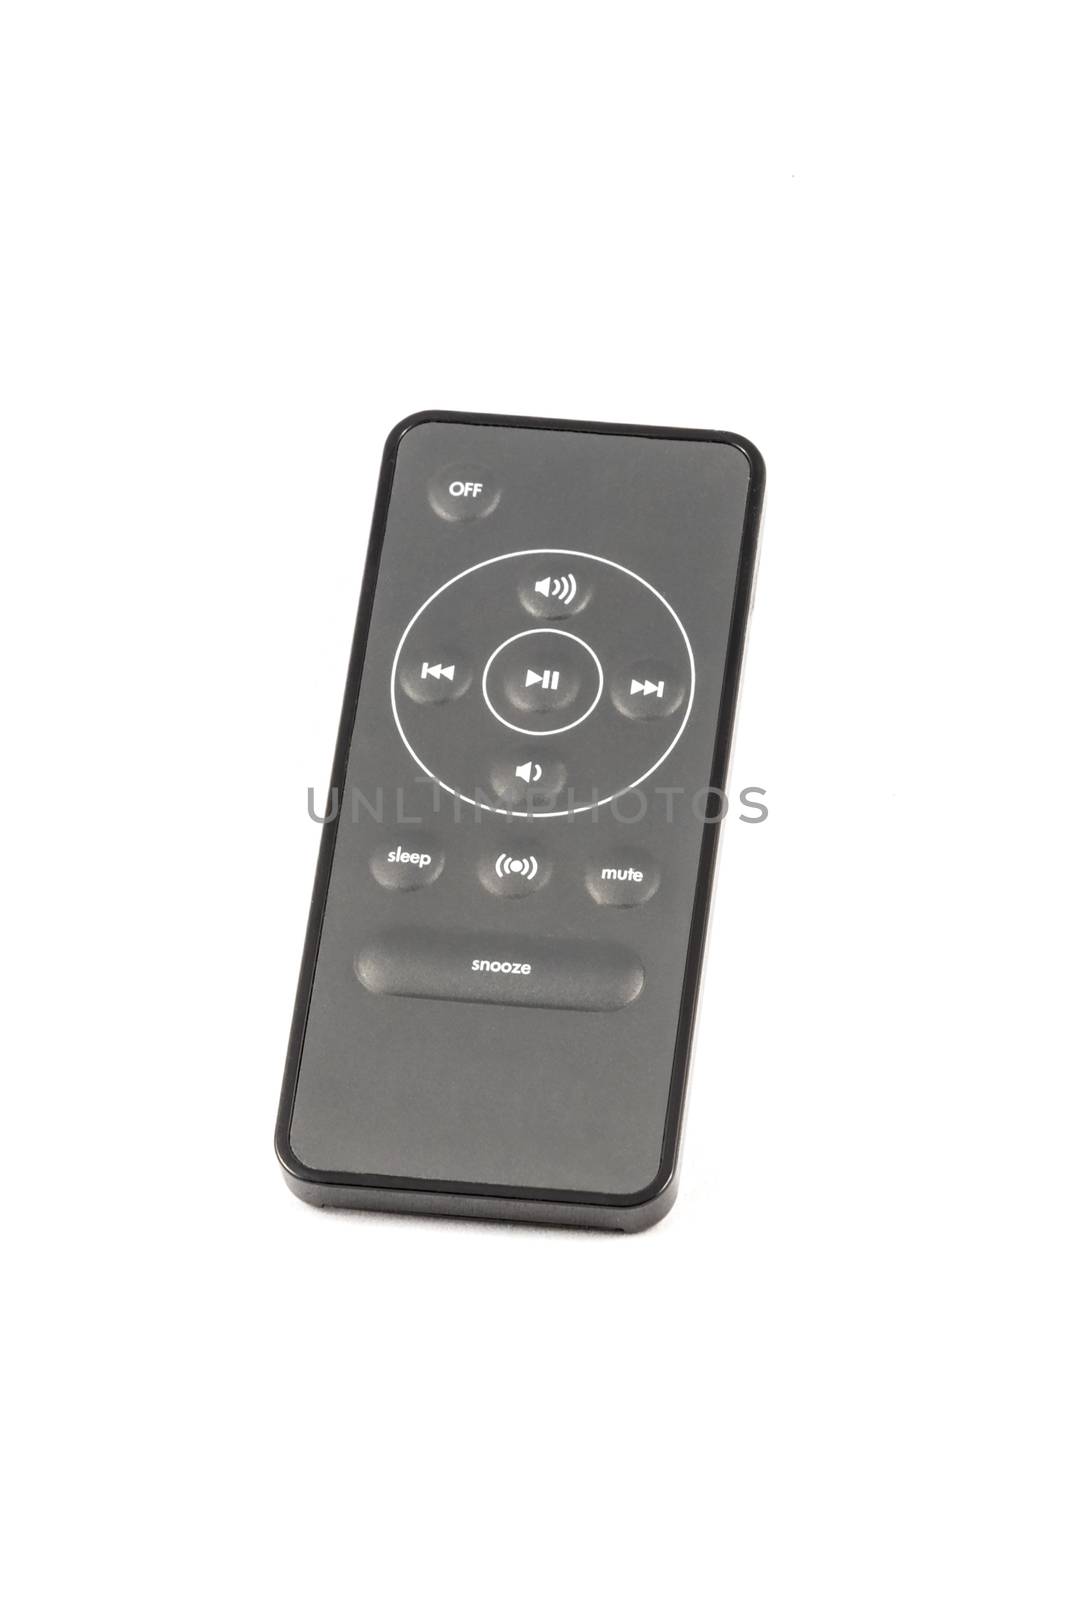 Small black unbranded remote control  by marcorubino